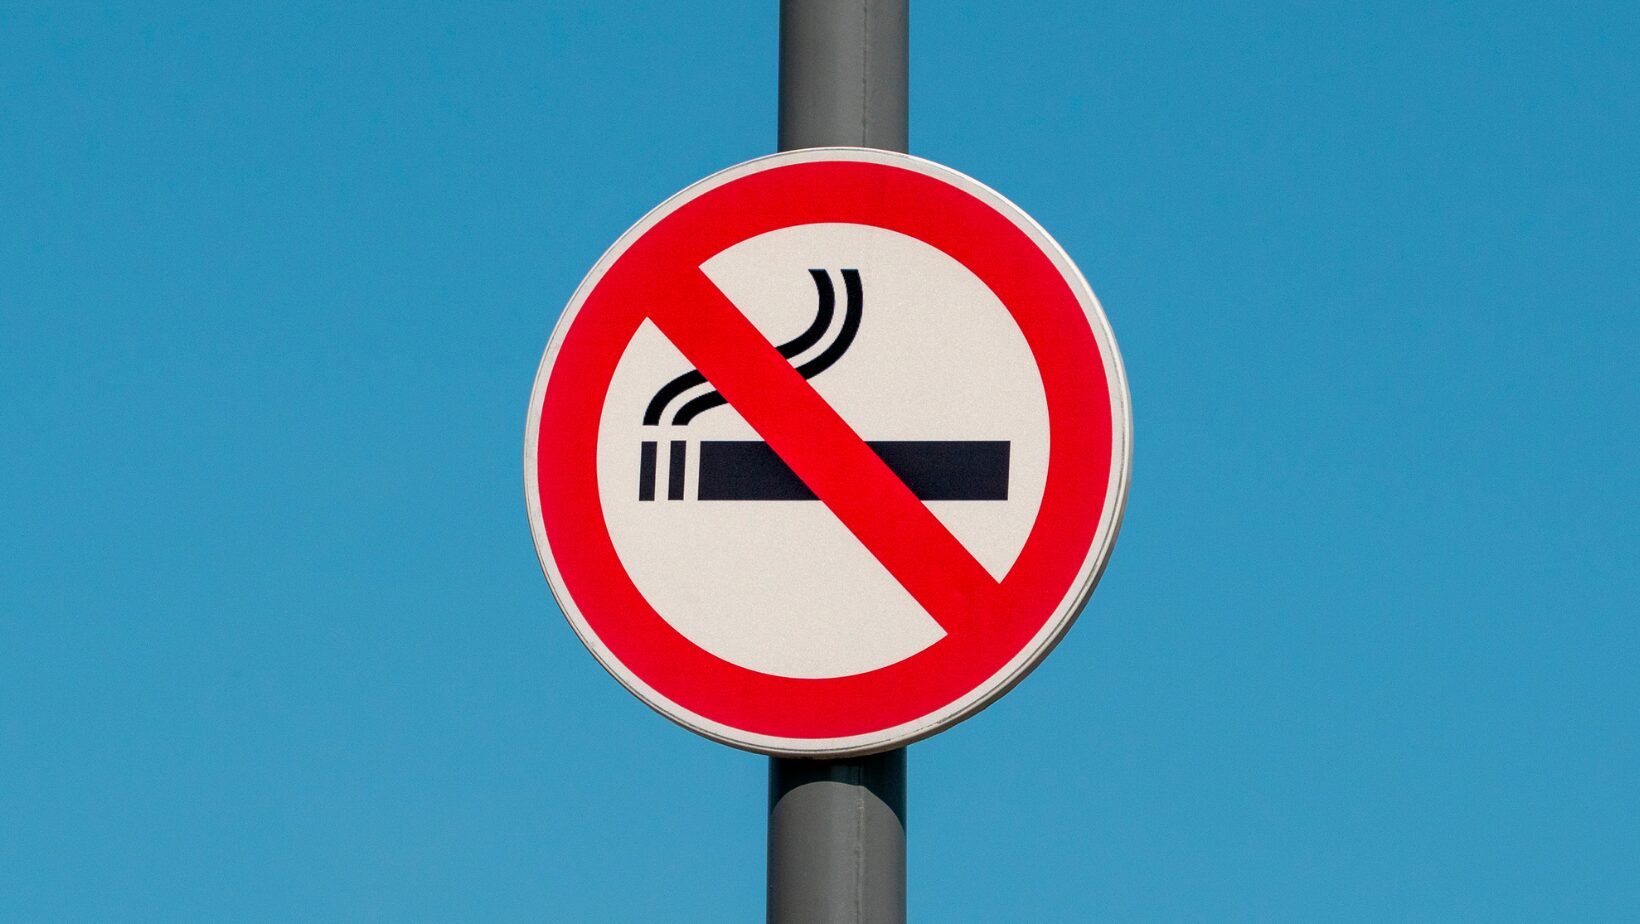 cartello rosso e bianco con una sigaretta nera barrata su sfondo blu